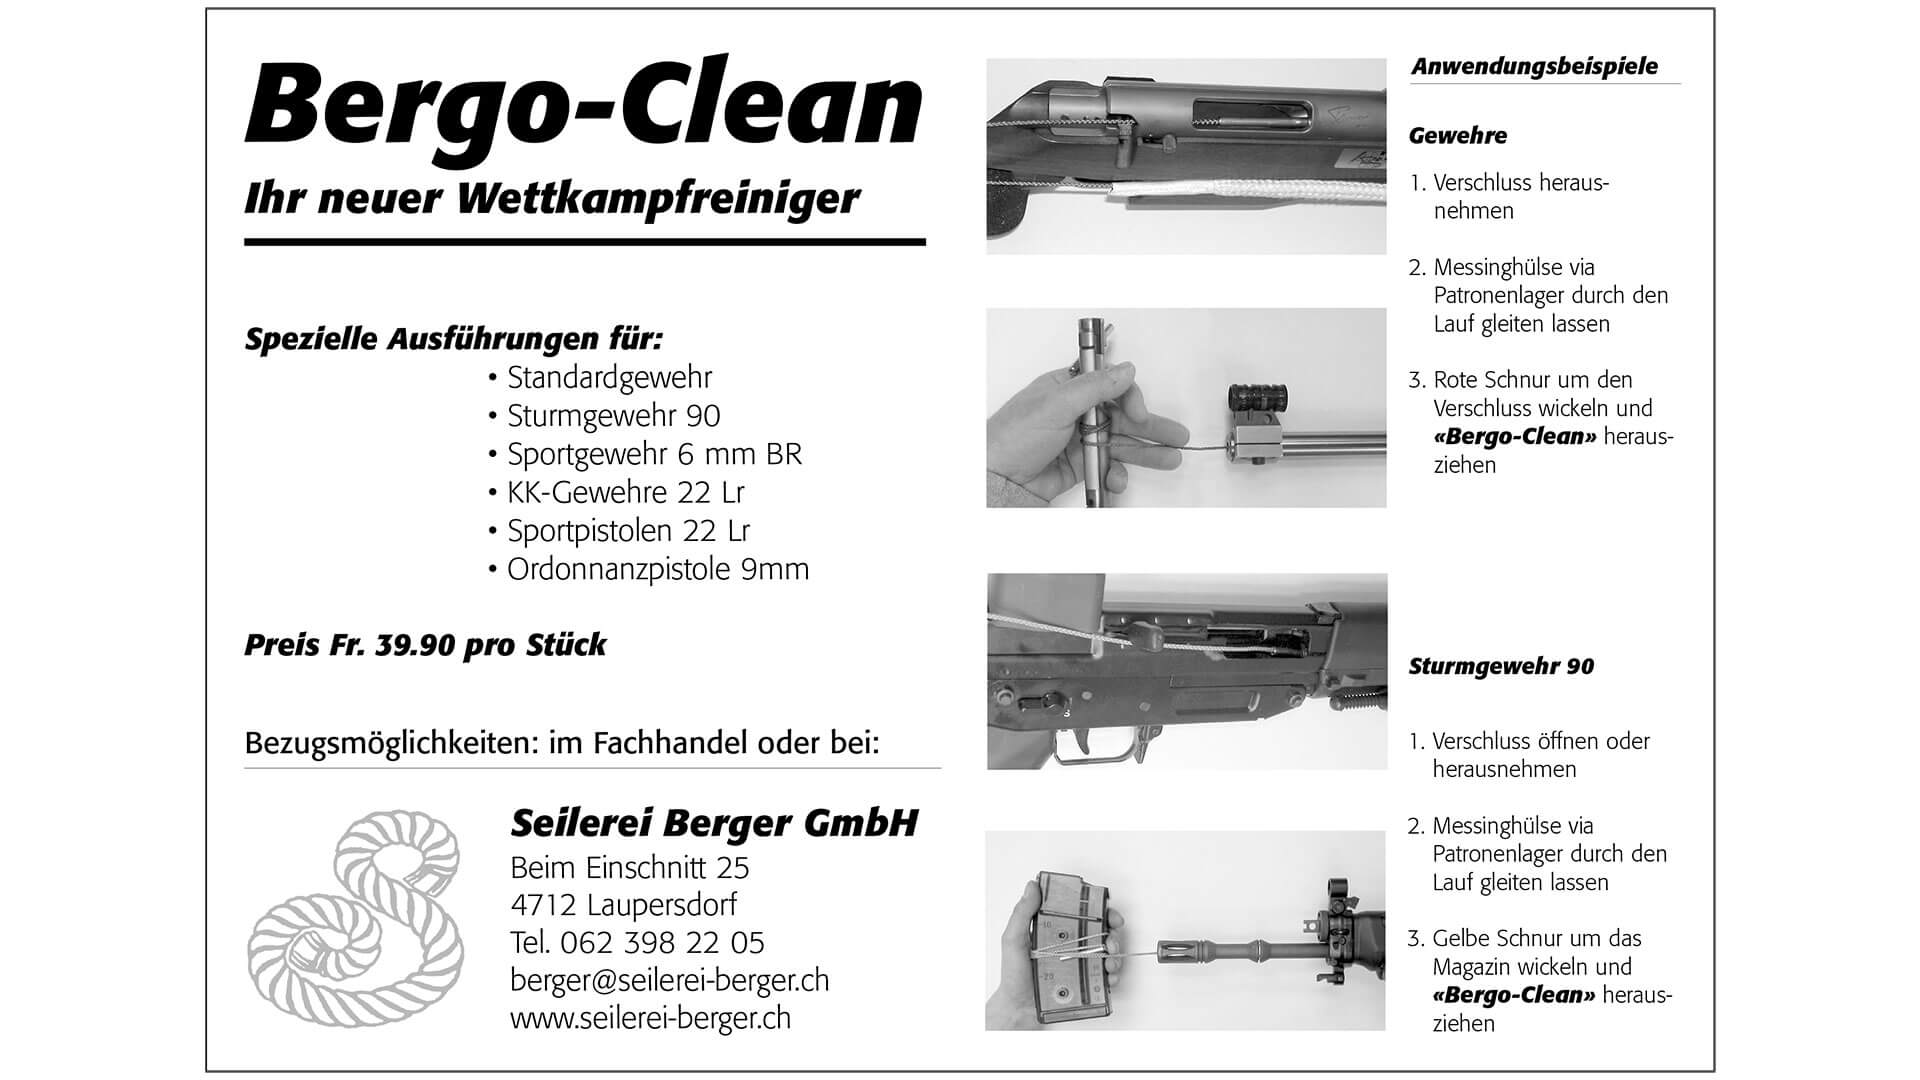 Bergo-clean